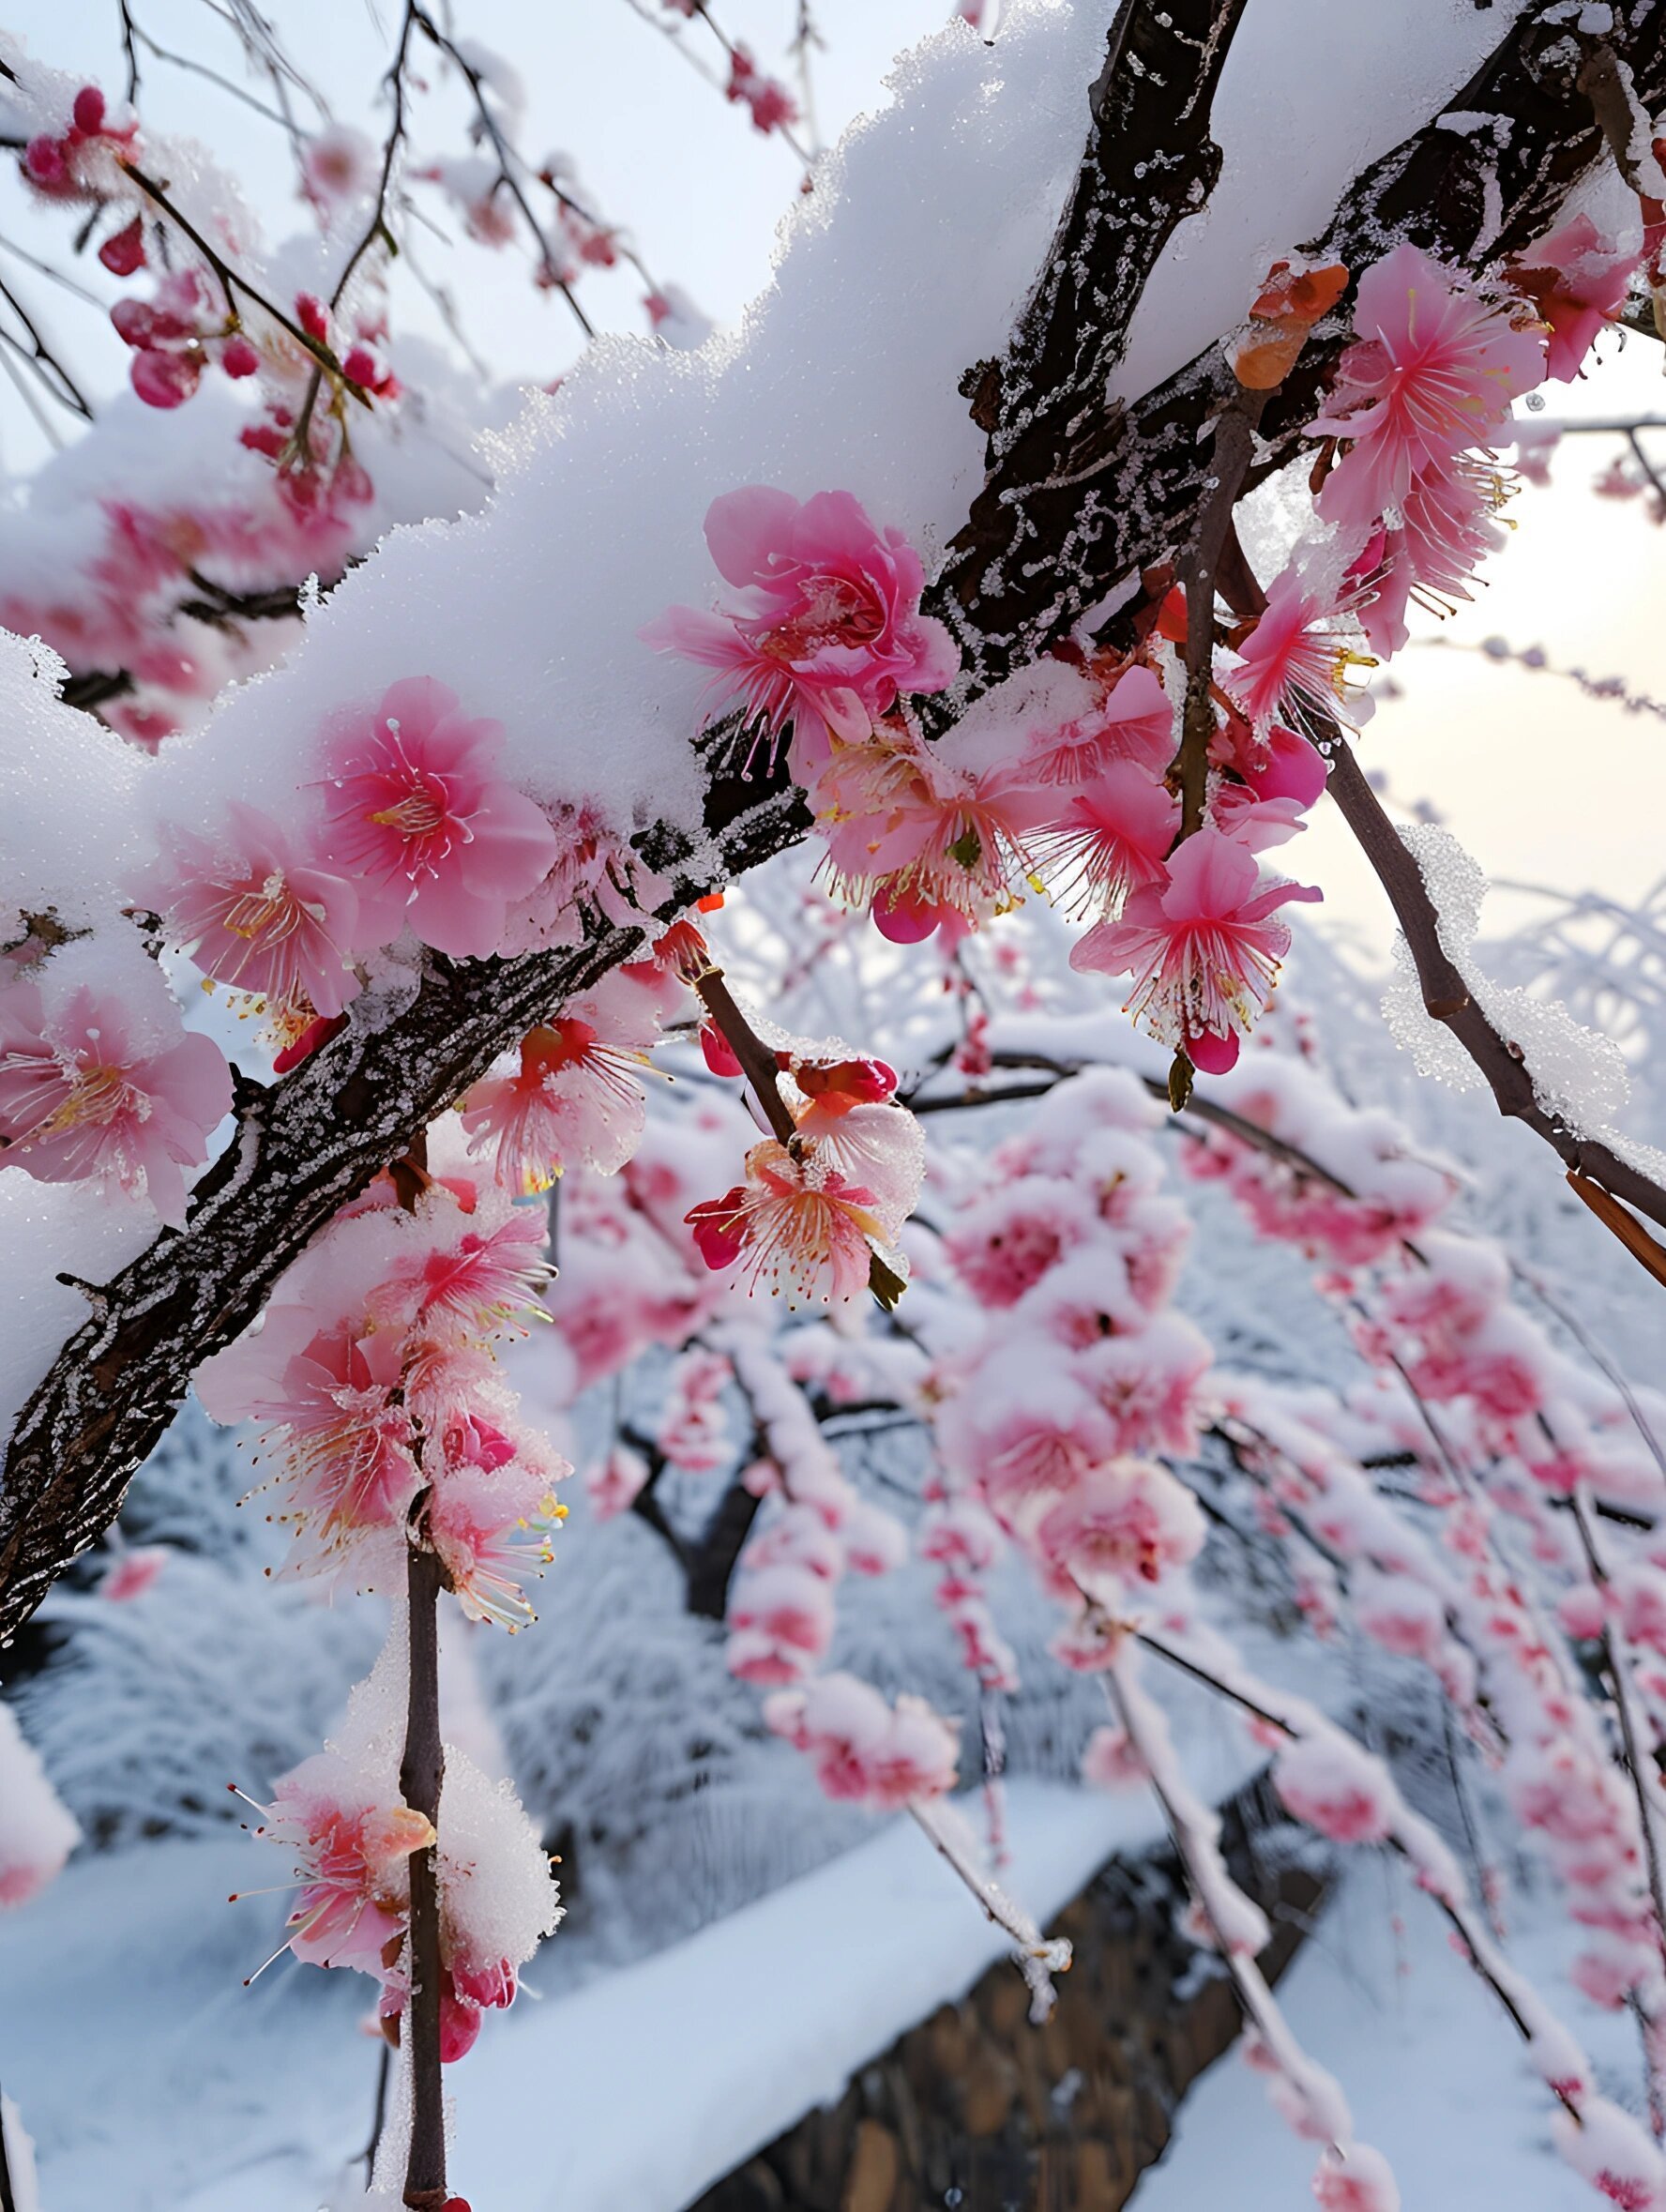 梅花香自苦寒来，冰天雪地，盛开的梅花美图，大雪也遮不住梅花的美啊！套图1